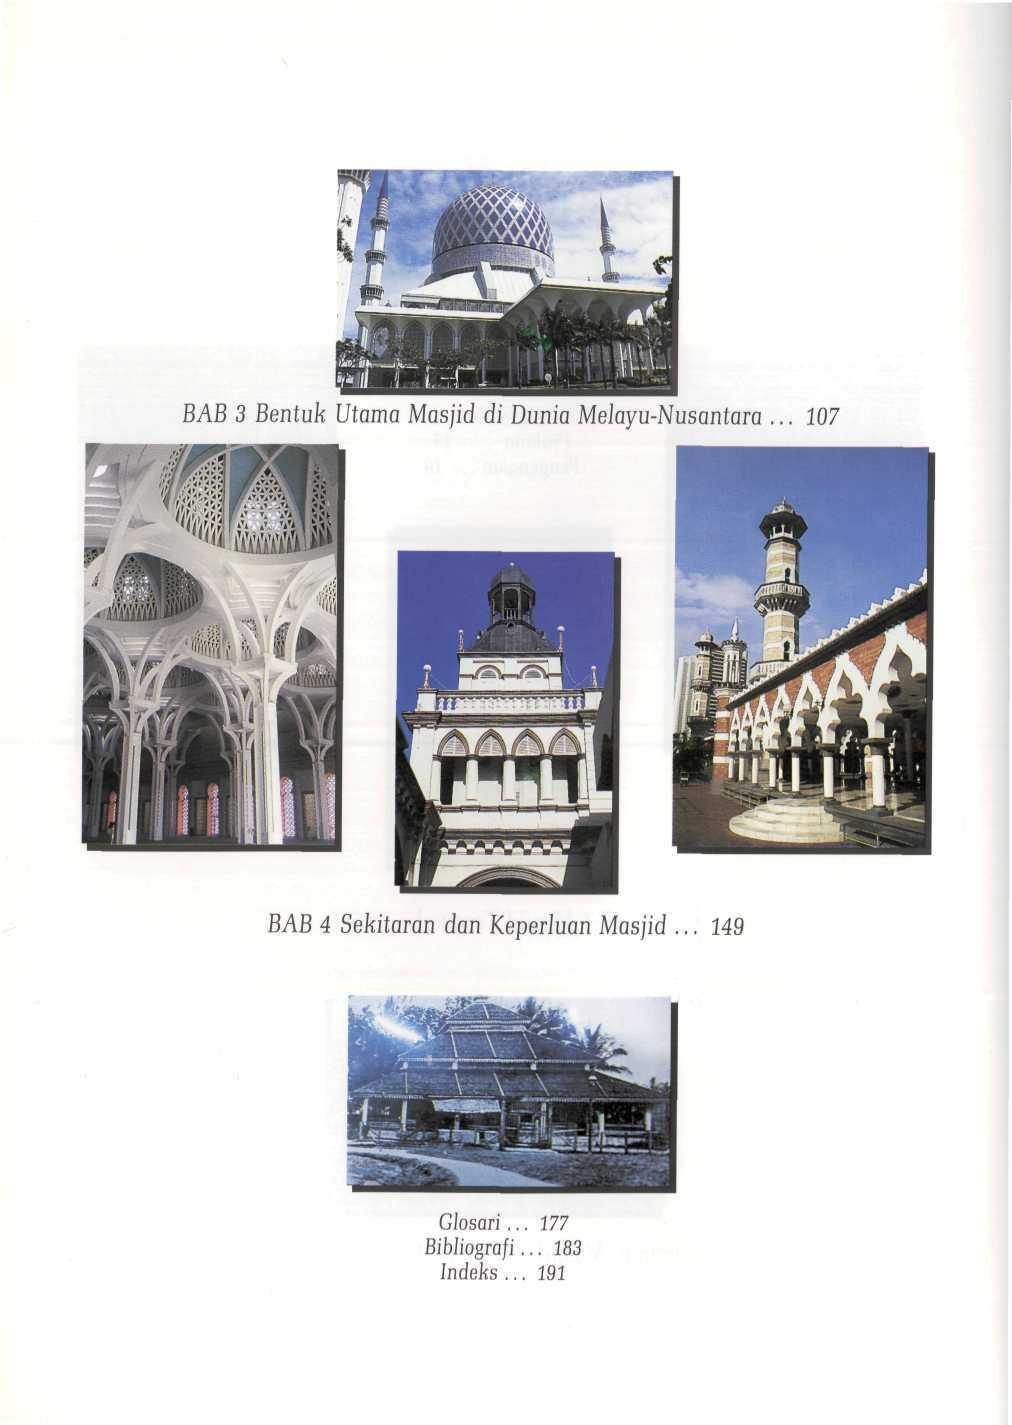 BAB 3 Bentuk Utama Masjid di Dunia Mehyu-Nusantara.